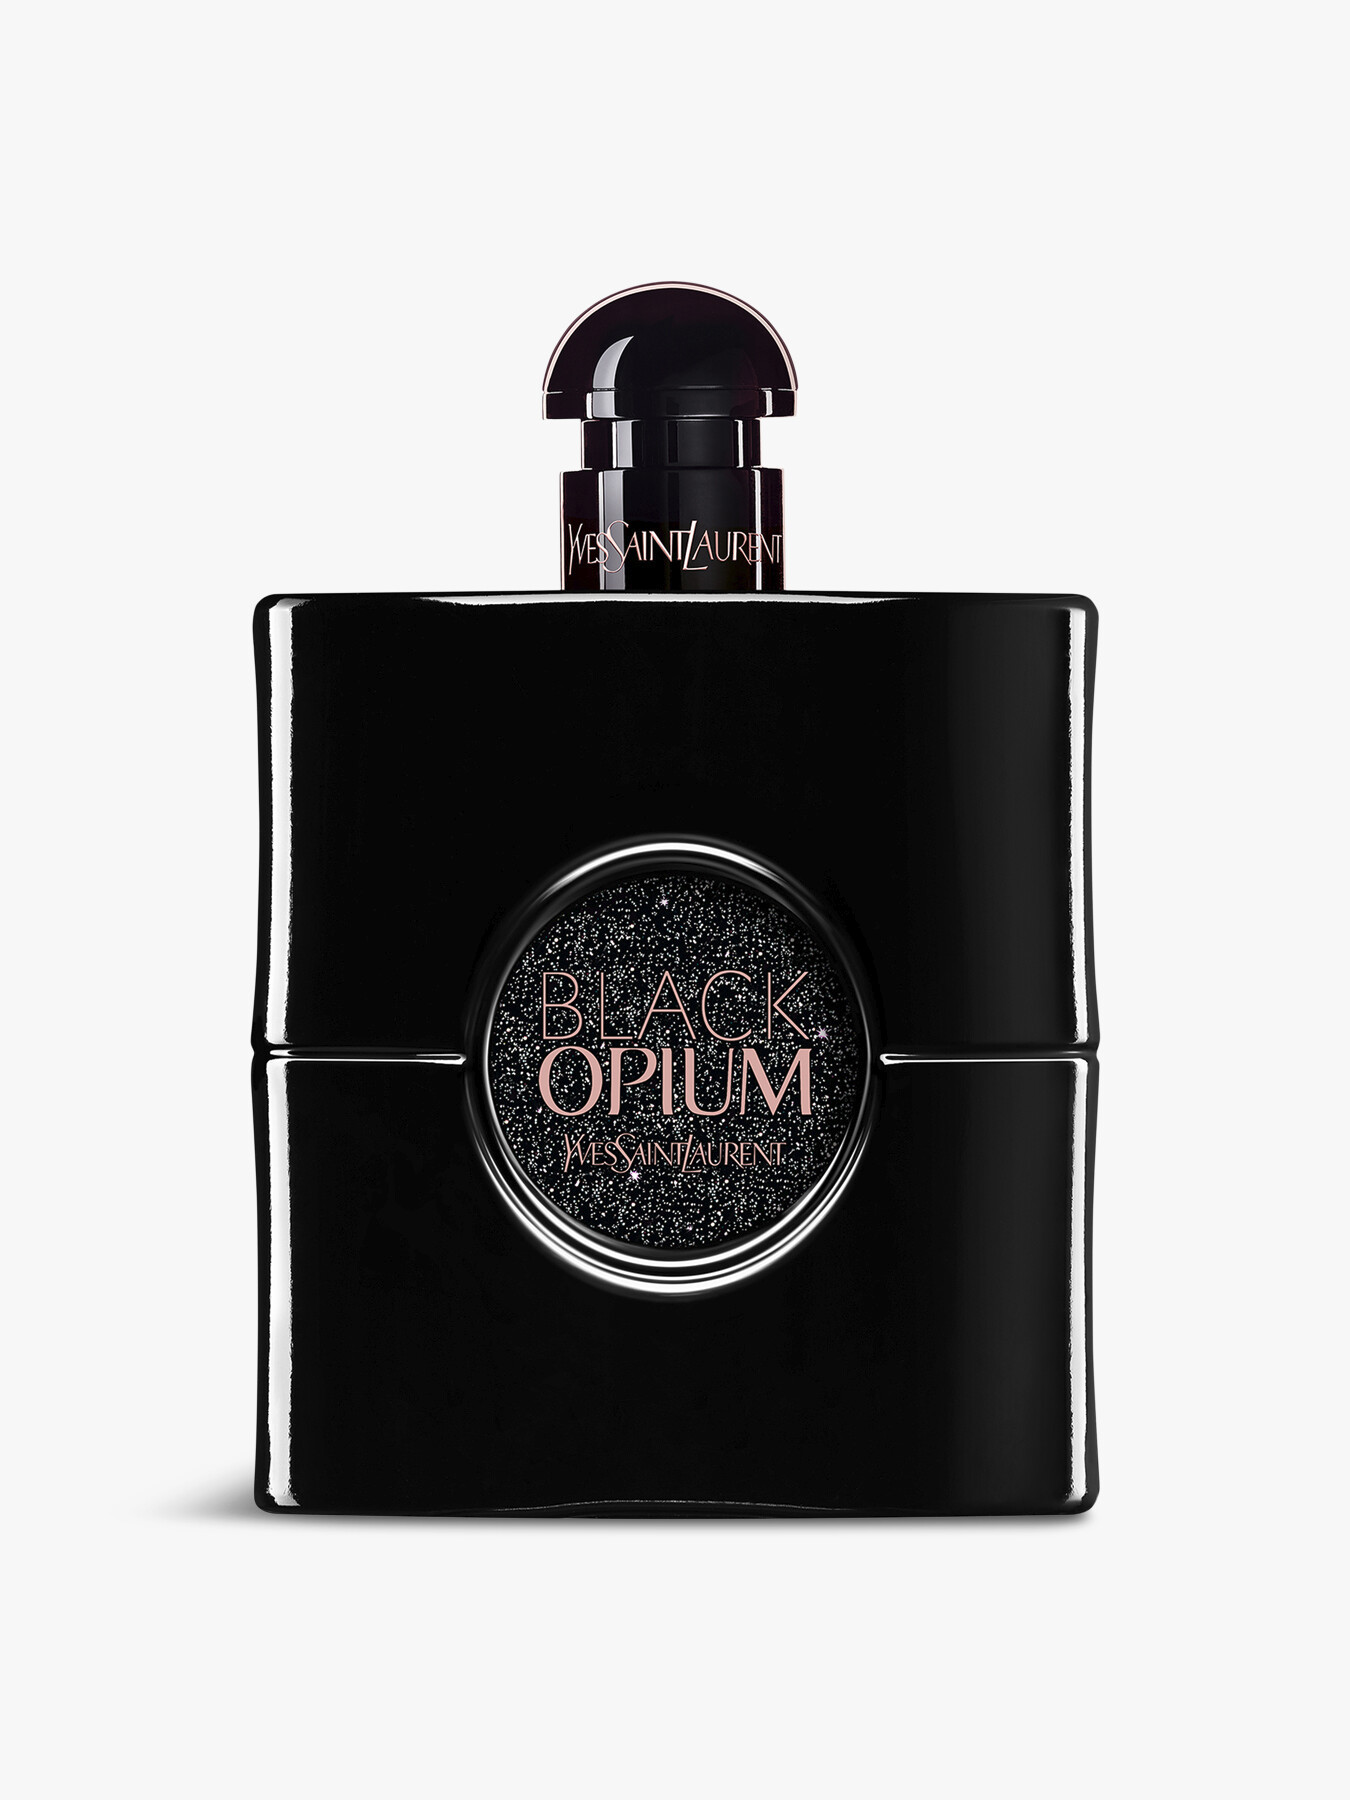 Ysl Black Opium Le Parfum 90ml